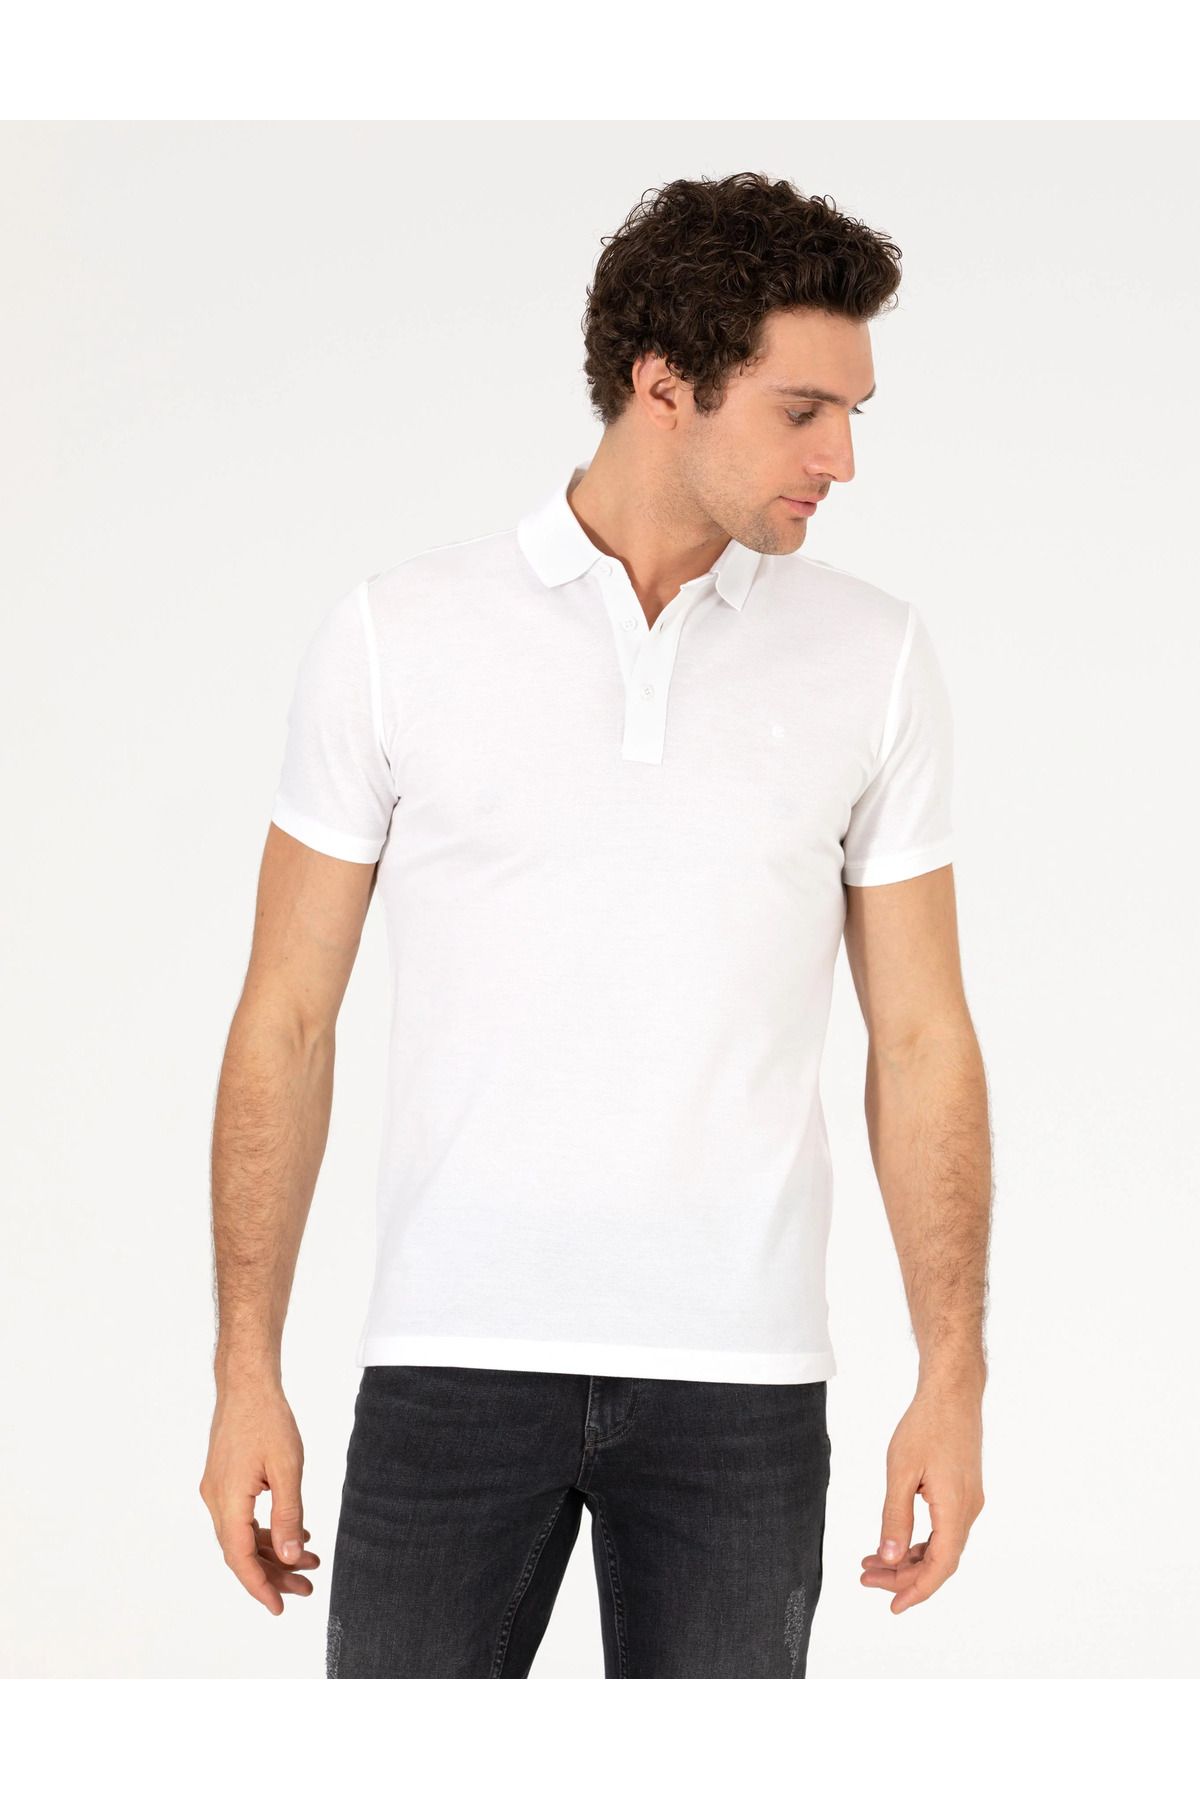 Cacharel Beyaz Polo Yaka Slim Fit Basic T-Shirt G051SZ011.000.1592189.VR013